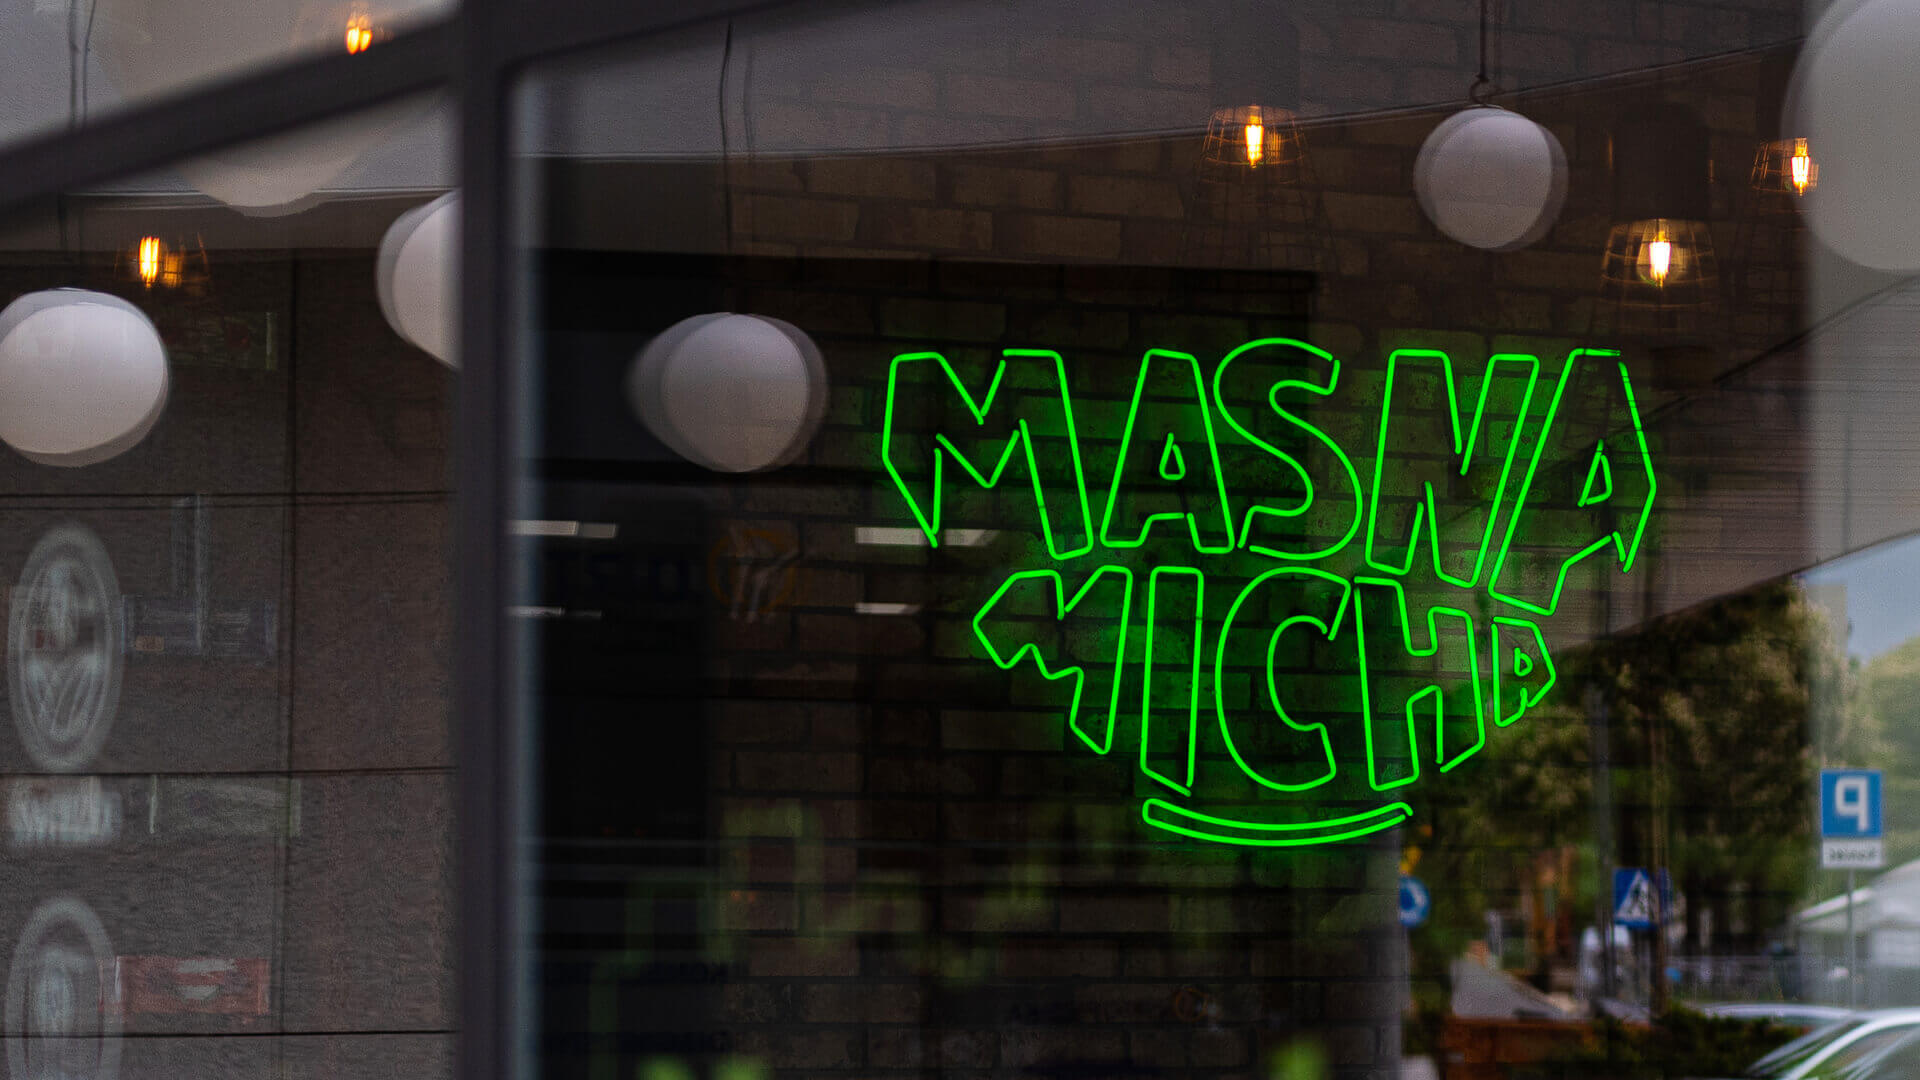 Masna Micha - Enseigne lumineuse pour le restaurant Masna Micha à Gdansk, à l'intérieur du local.